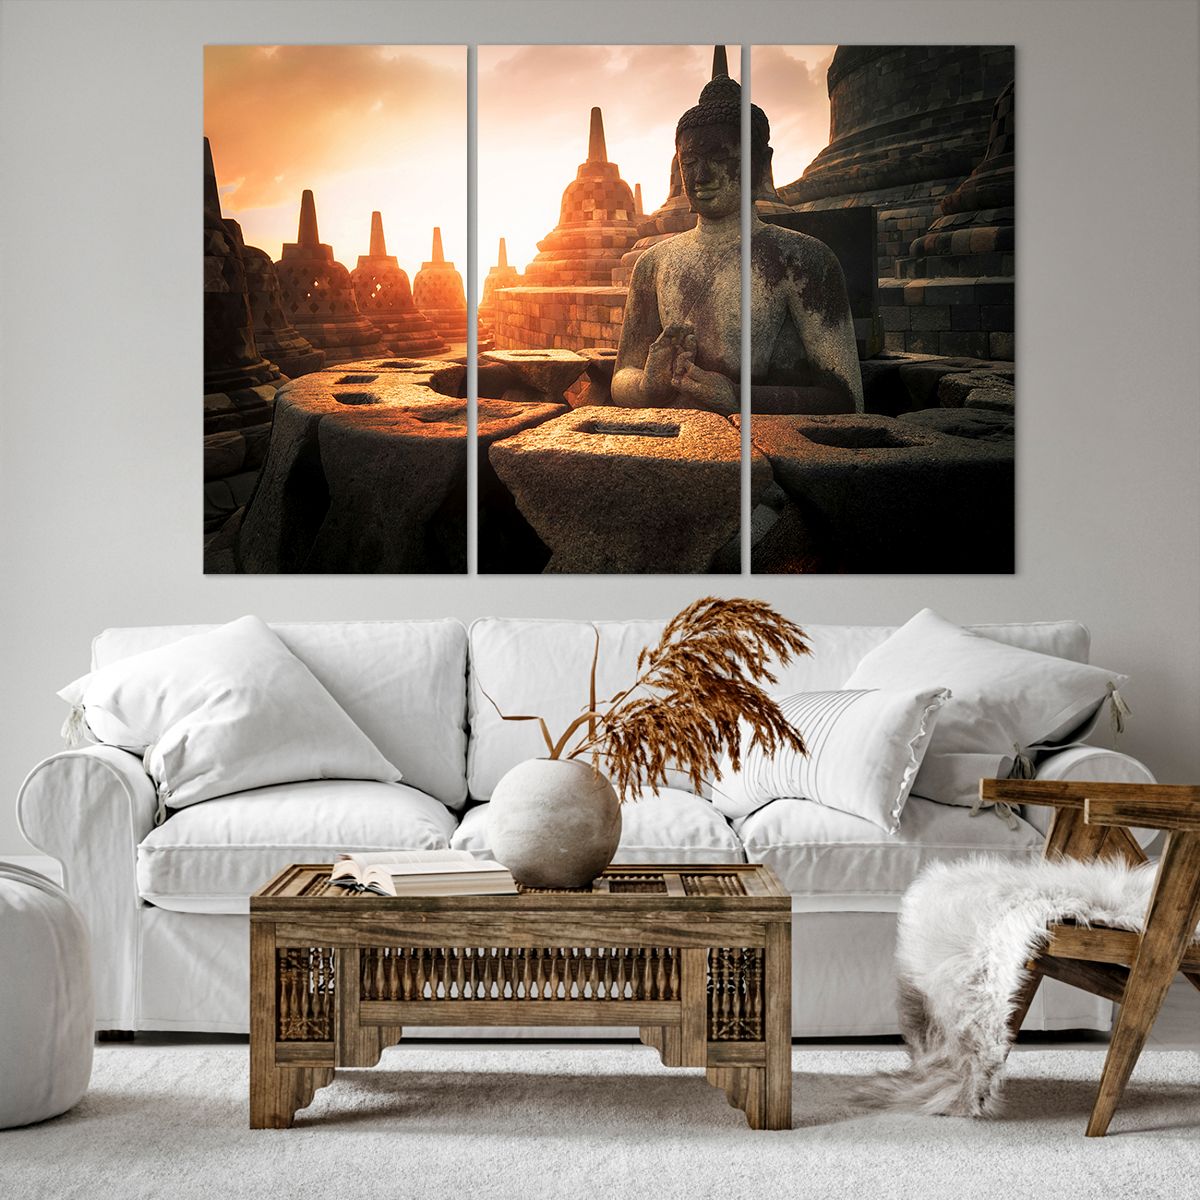 Impression sur toile Asie, Impression sur toile Bouddha, Impression sur toile Borobudur, Impression sur toile Culture, Impression sur toile Méditation